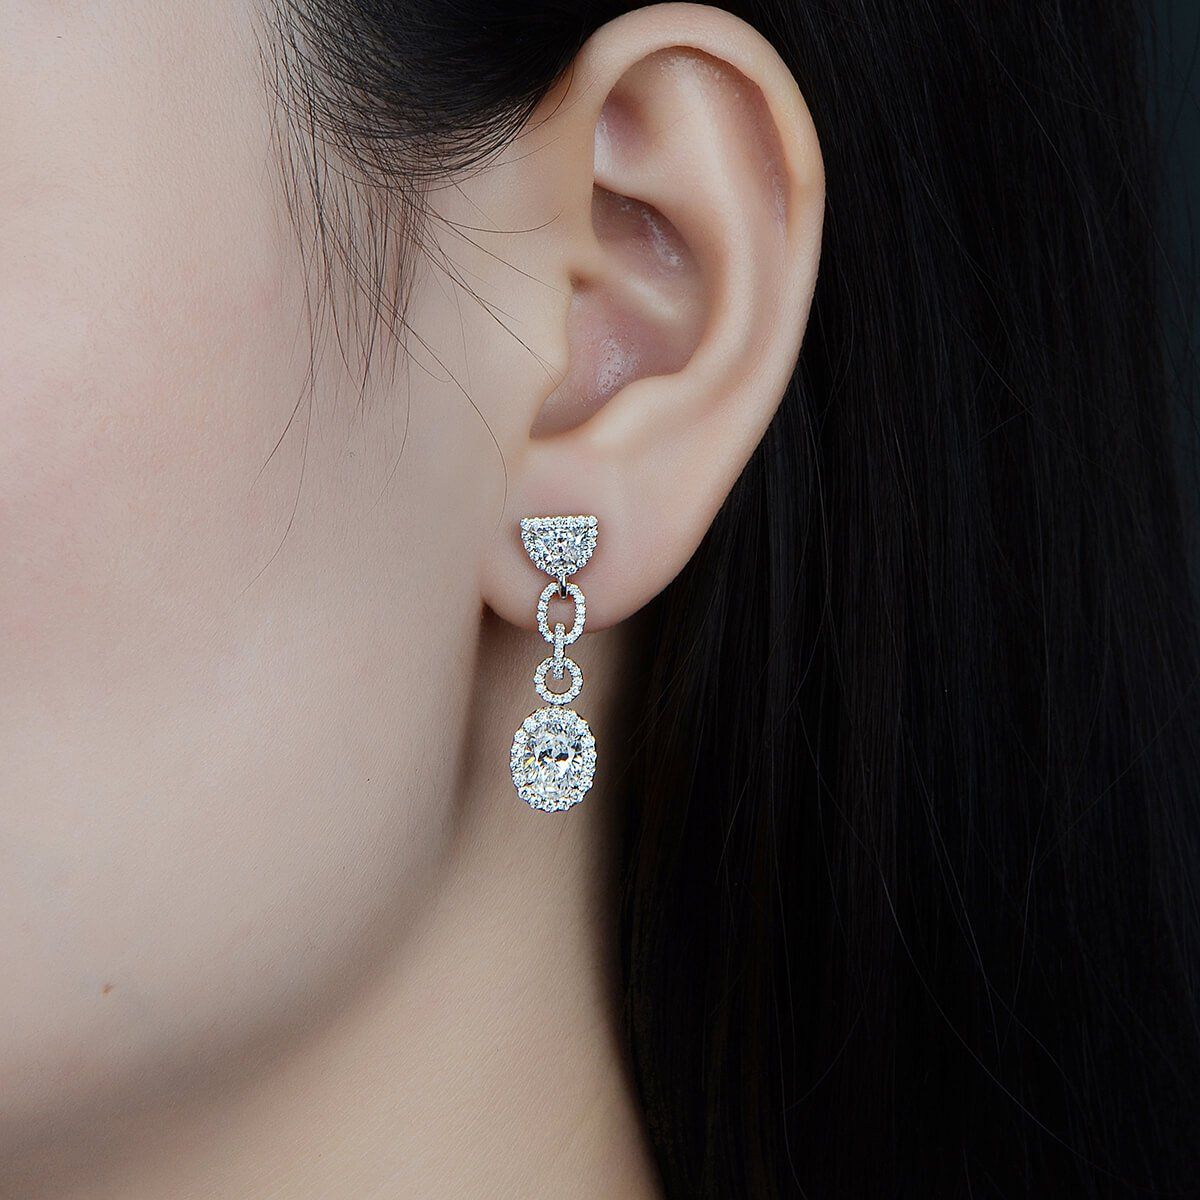  White Diamond Earrings, 2.02 Ct. (3.33 Ct. TW), Oval shape, GIA Certified, JCEW05428138